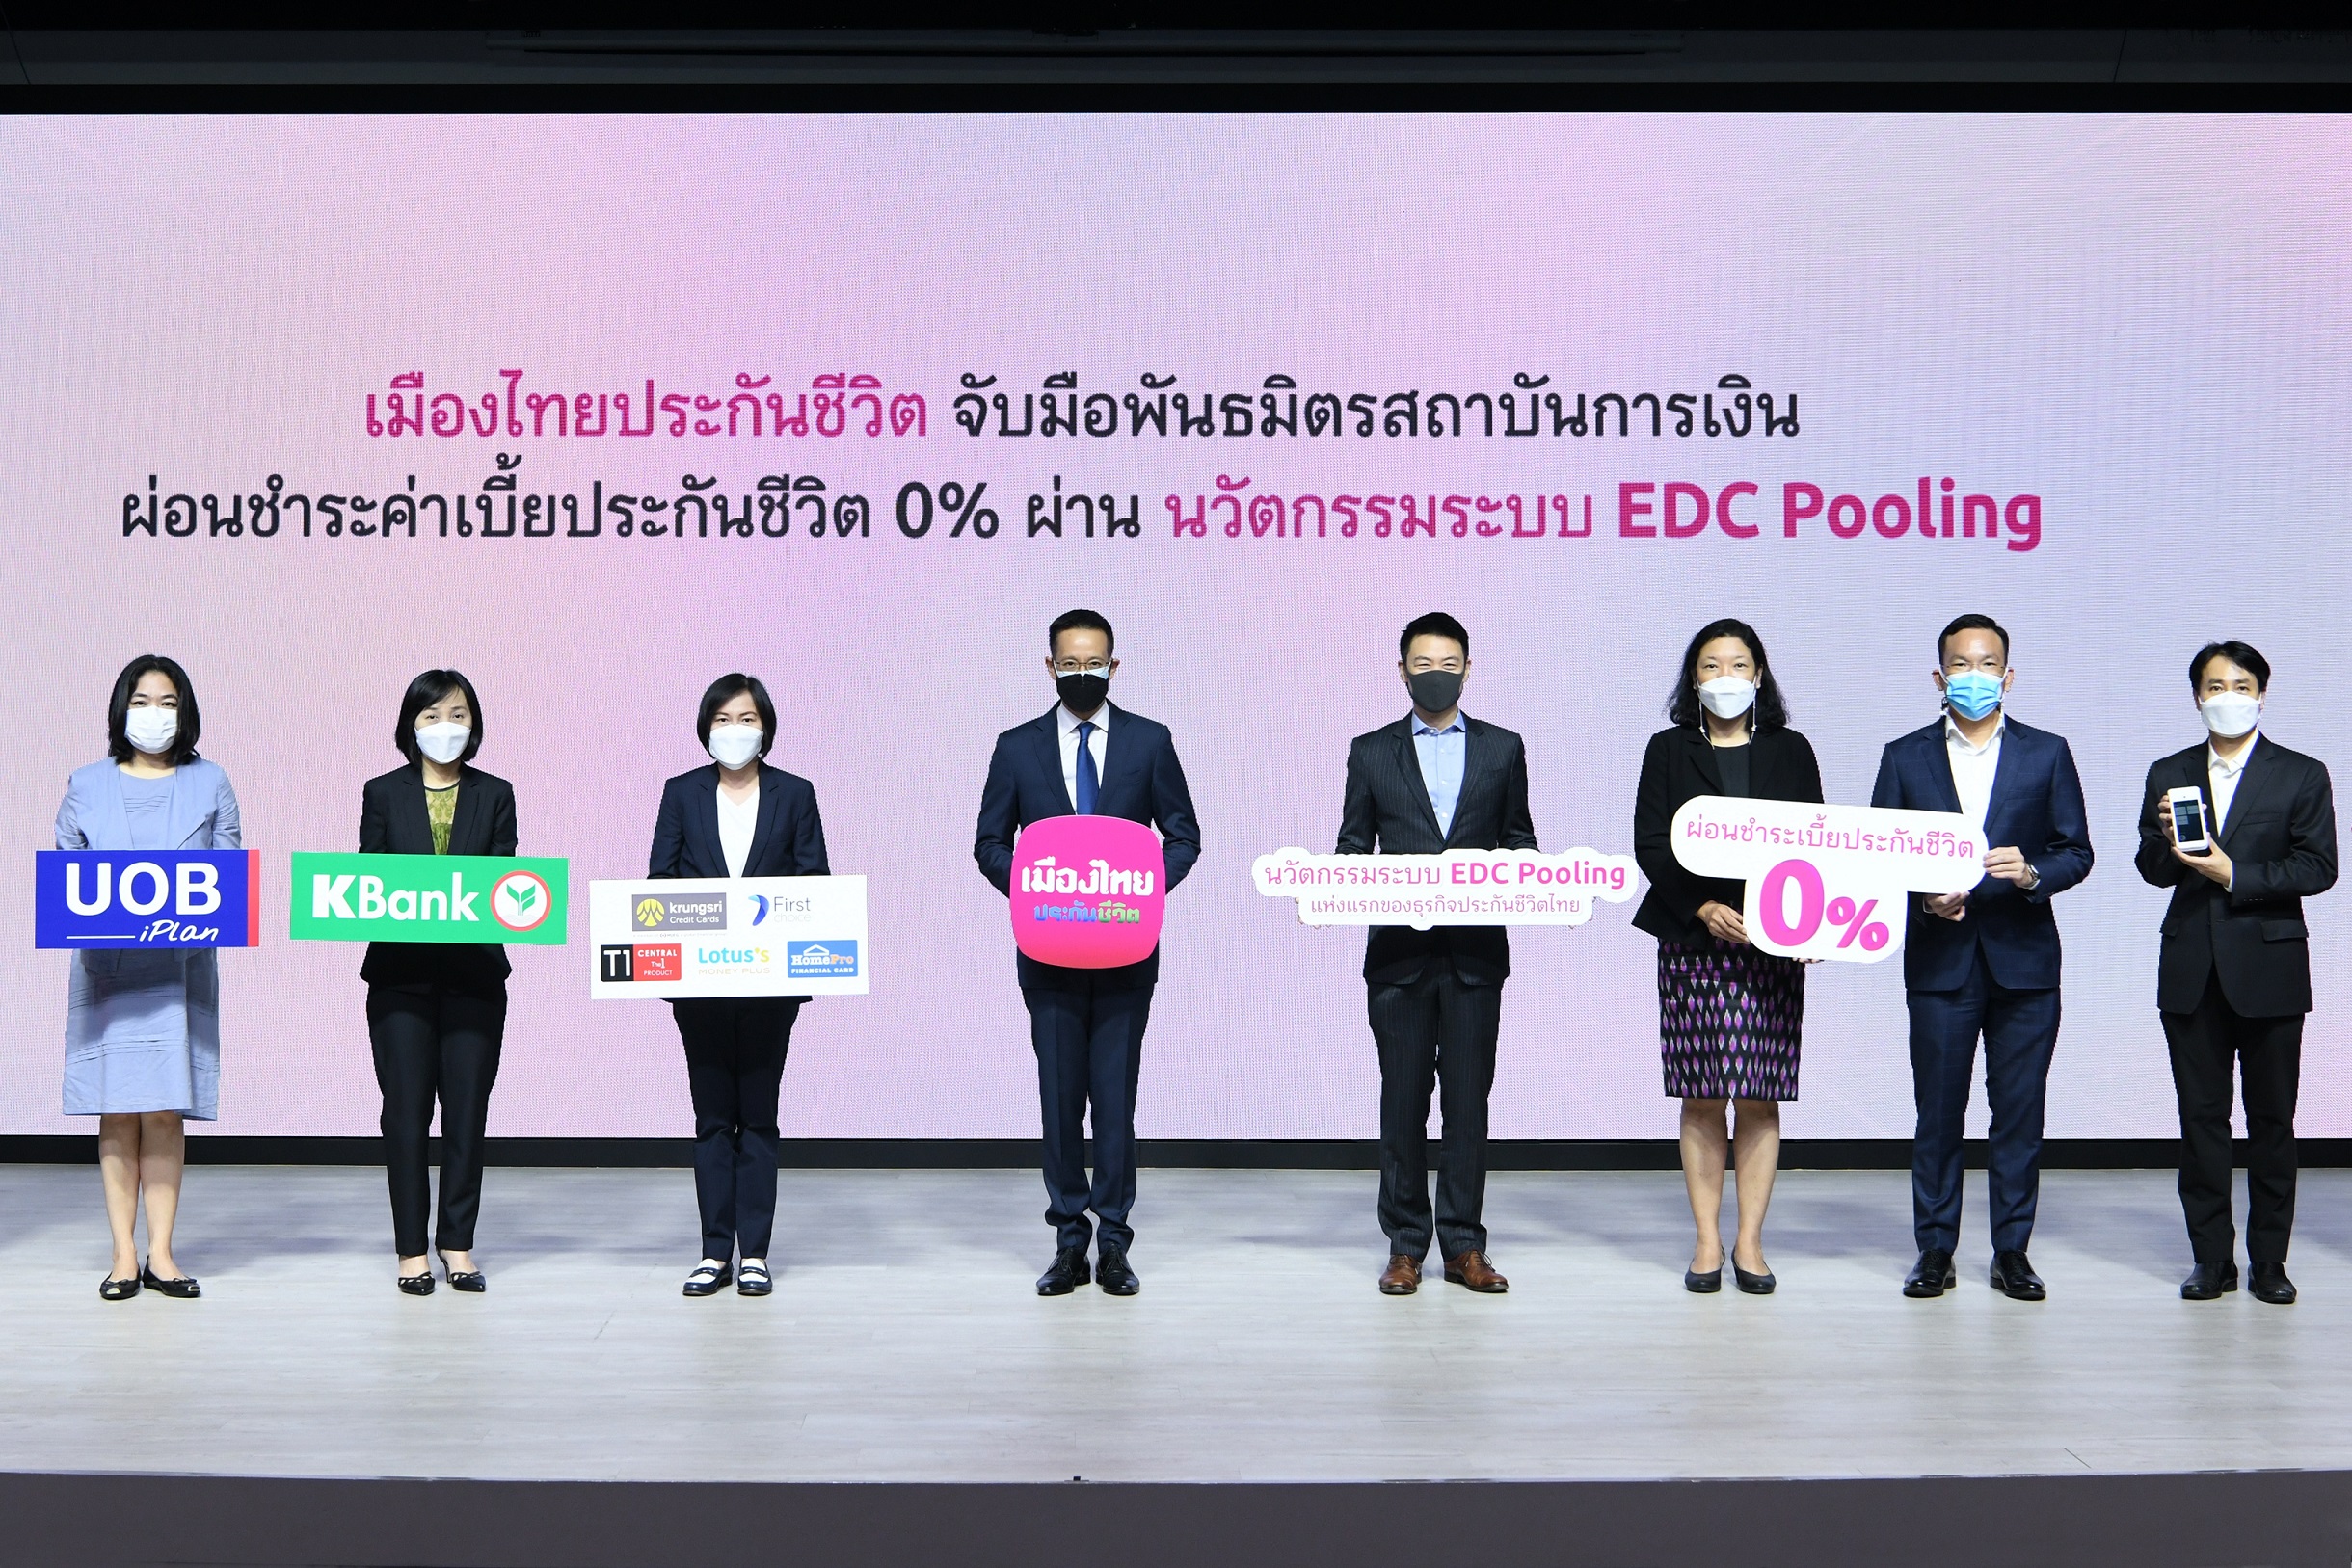 เมืองไทยประกันชีวิต จับมือพันธมิตรสถาบันการเงินชั้นนำ มอบบริการผ่อนชำระค่าเบี้ยประกันภัย 0% ผ่านนวัตกรรมระบบ EDC Pooling